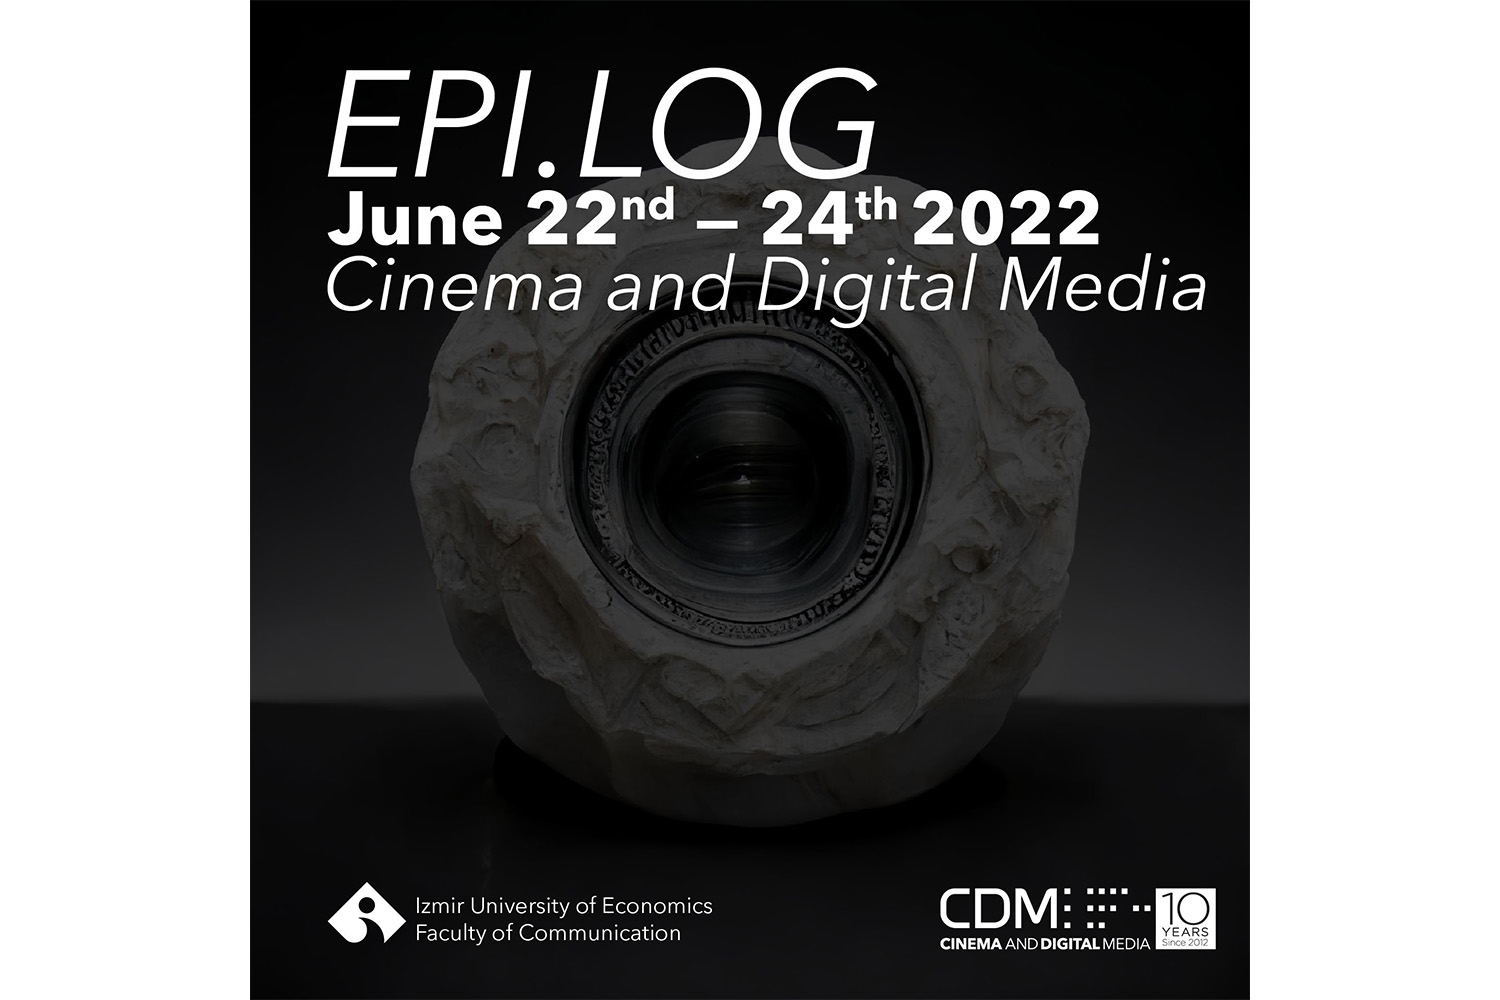 EPI.LOG 2022 was held between 22 - 24 June